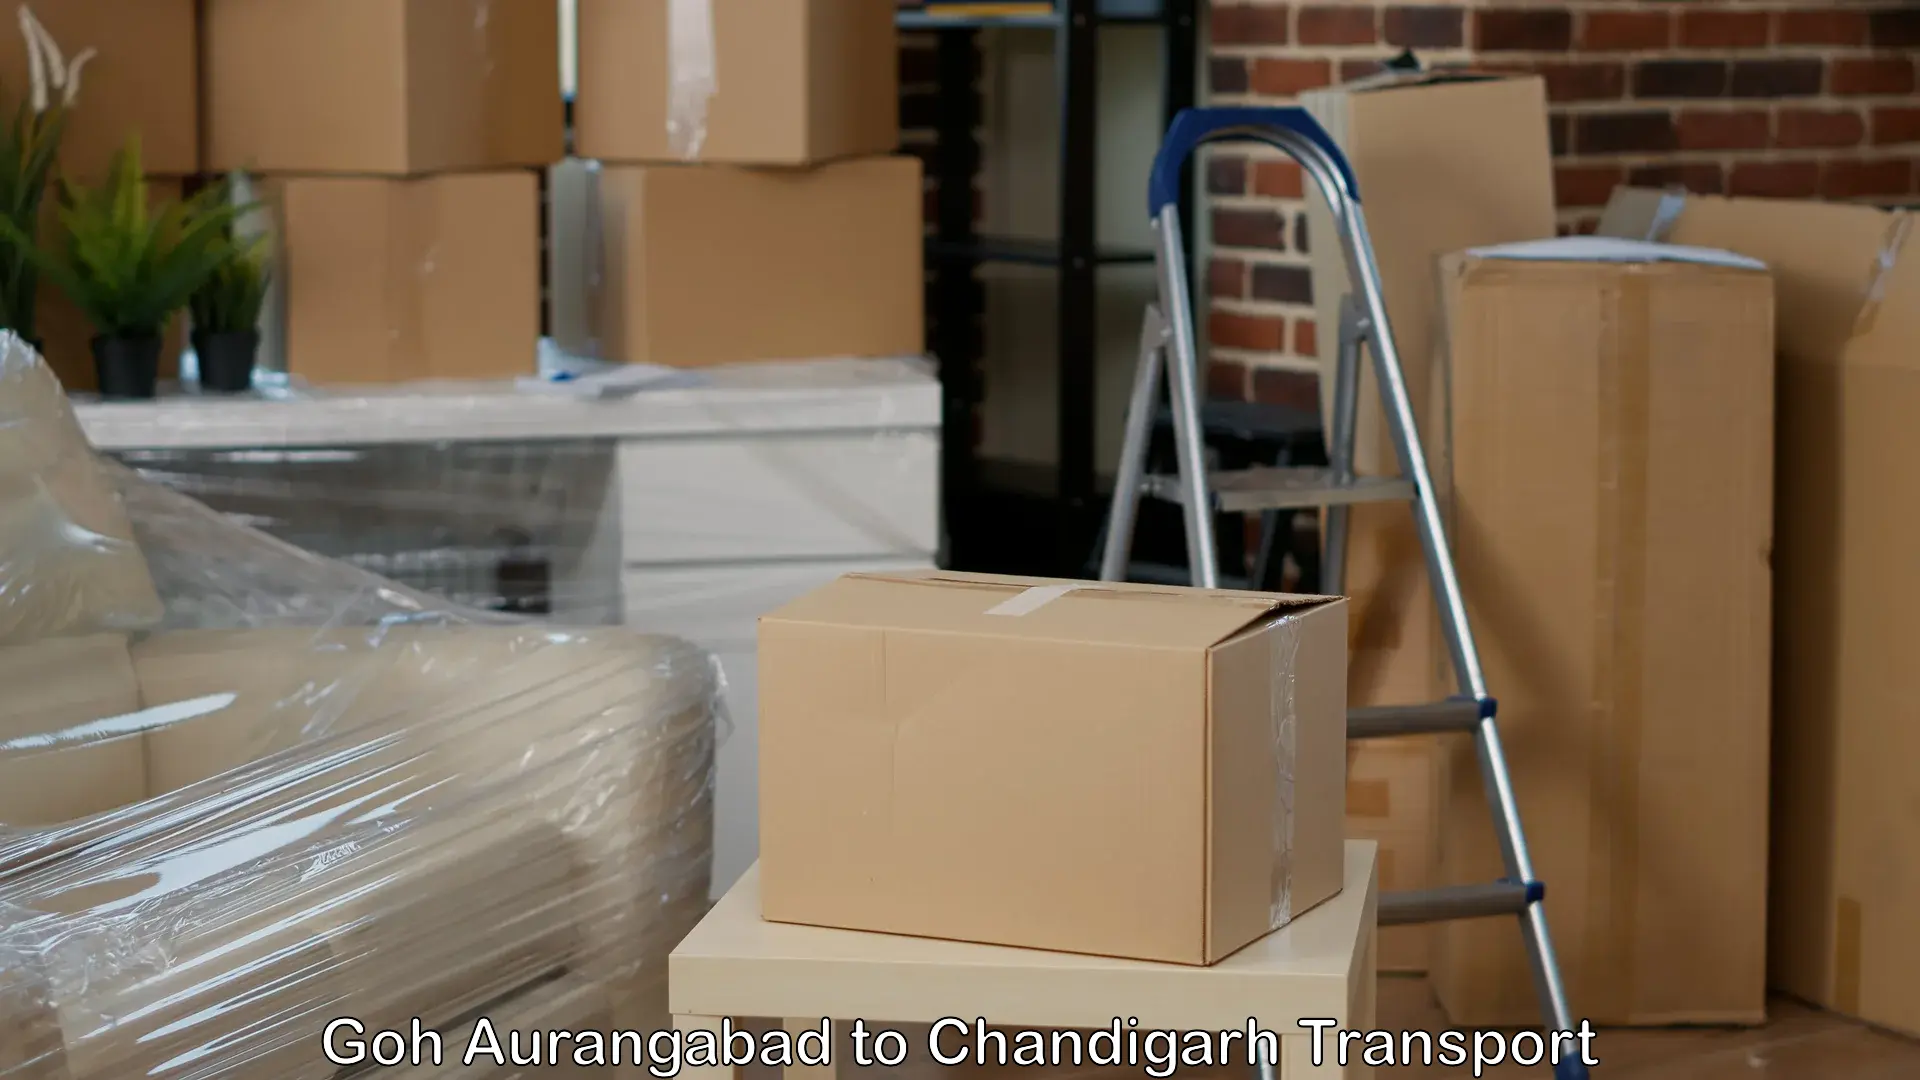 Interstate transport services Goh Aurangabad to Chandigarh